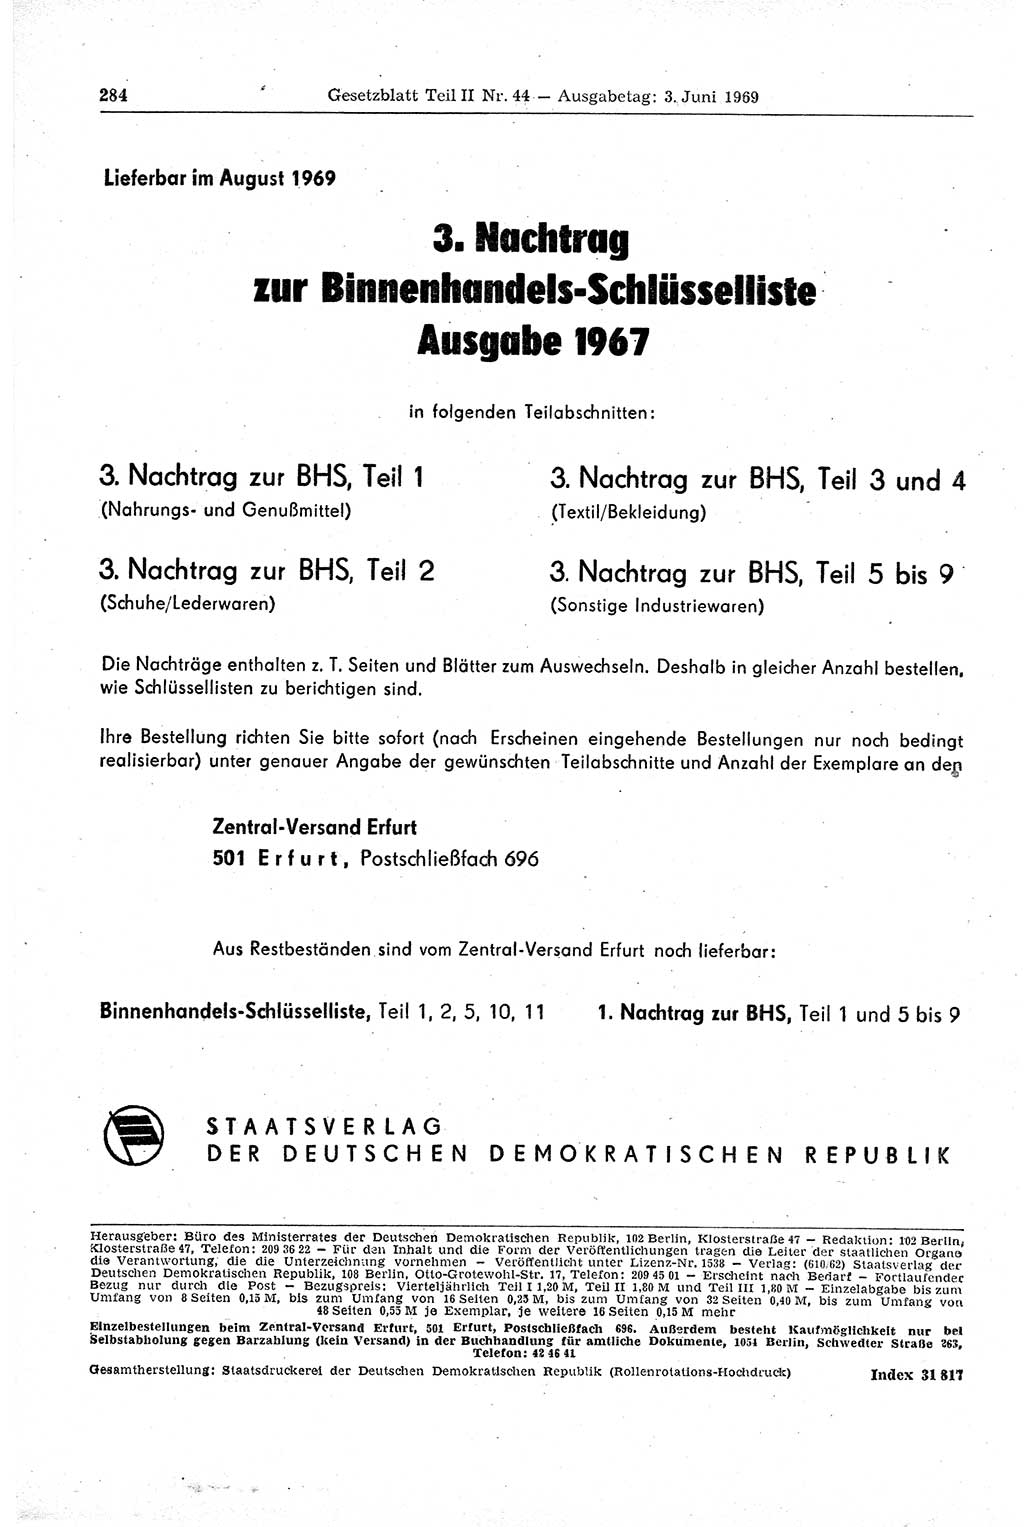 Gesetzblatt (GBl.) der Deutschen Demokratischen Republik (DDR) Teil ⅠⅠ 1969, Seite 284 (GBl. DDR ⅠⅠ 1969, S. 284)